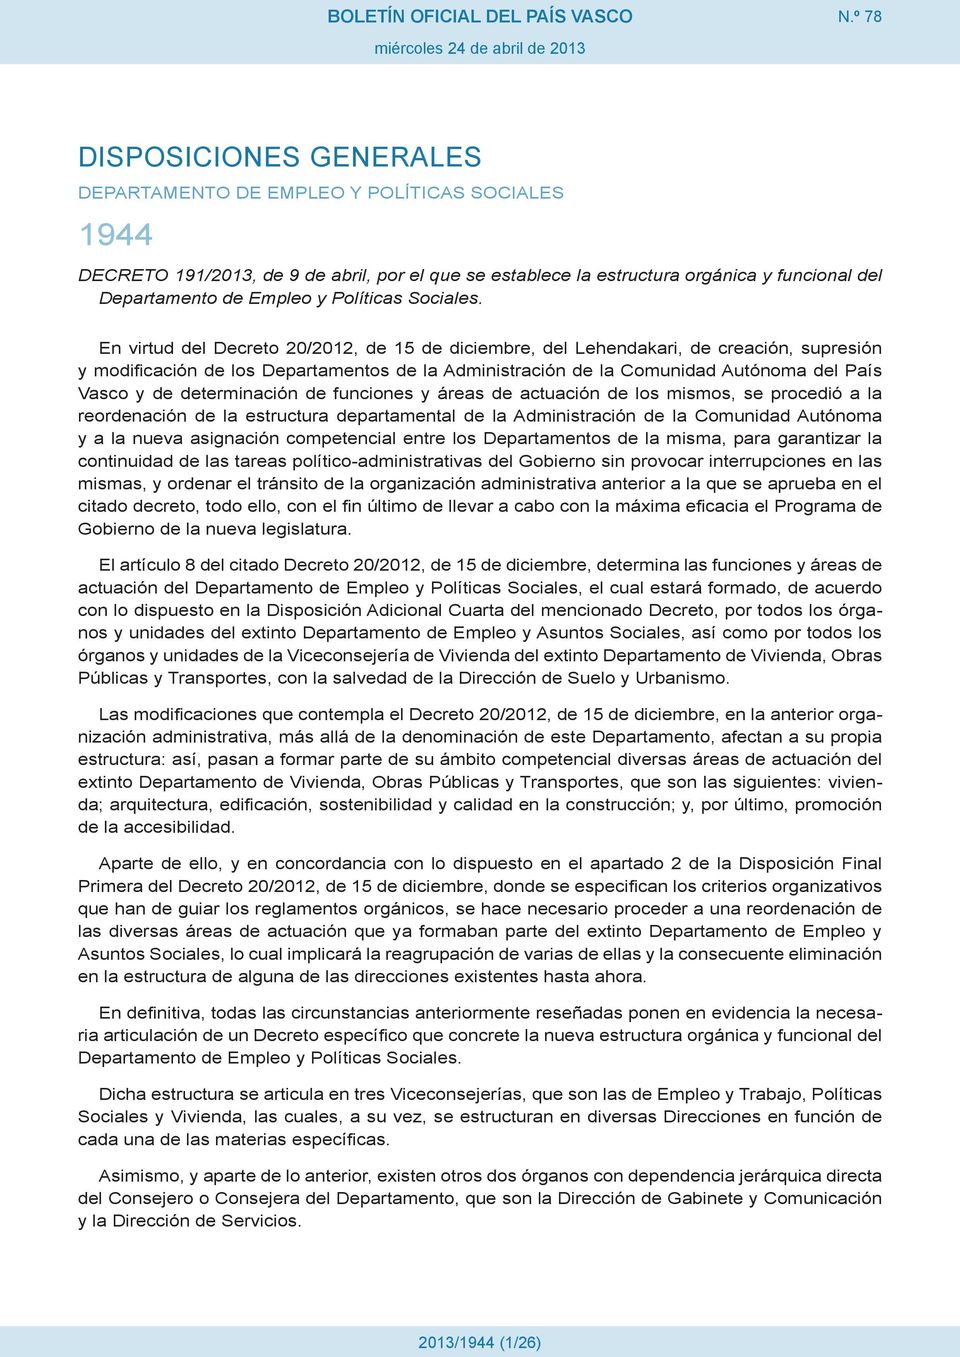 En virtud del Decreto 20/2012, de 15 de diciembre, del Lehendakari, de creación, supresión y modificación de los Departamentos de la Administración de la Comunidad Autónoma del País Vasco y de